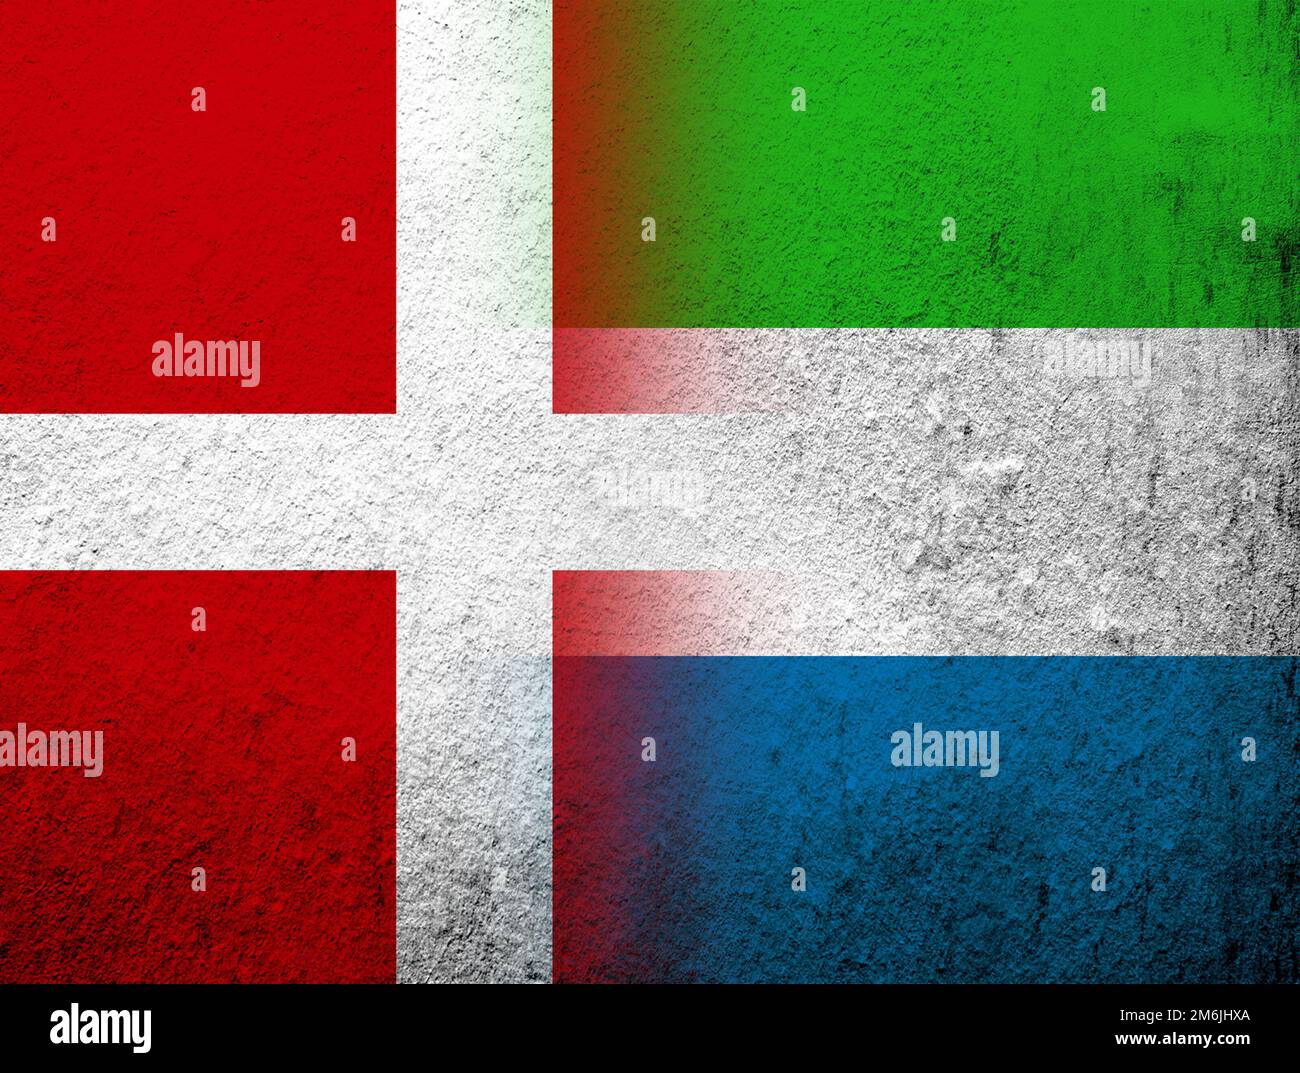 Le Royaume de Danemark drapeau national avec la République de Sierra Leone drapeau national de Salone. Grunge l'arrière-plan Banque D'Images